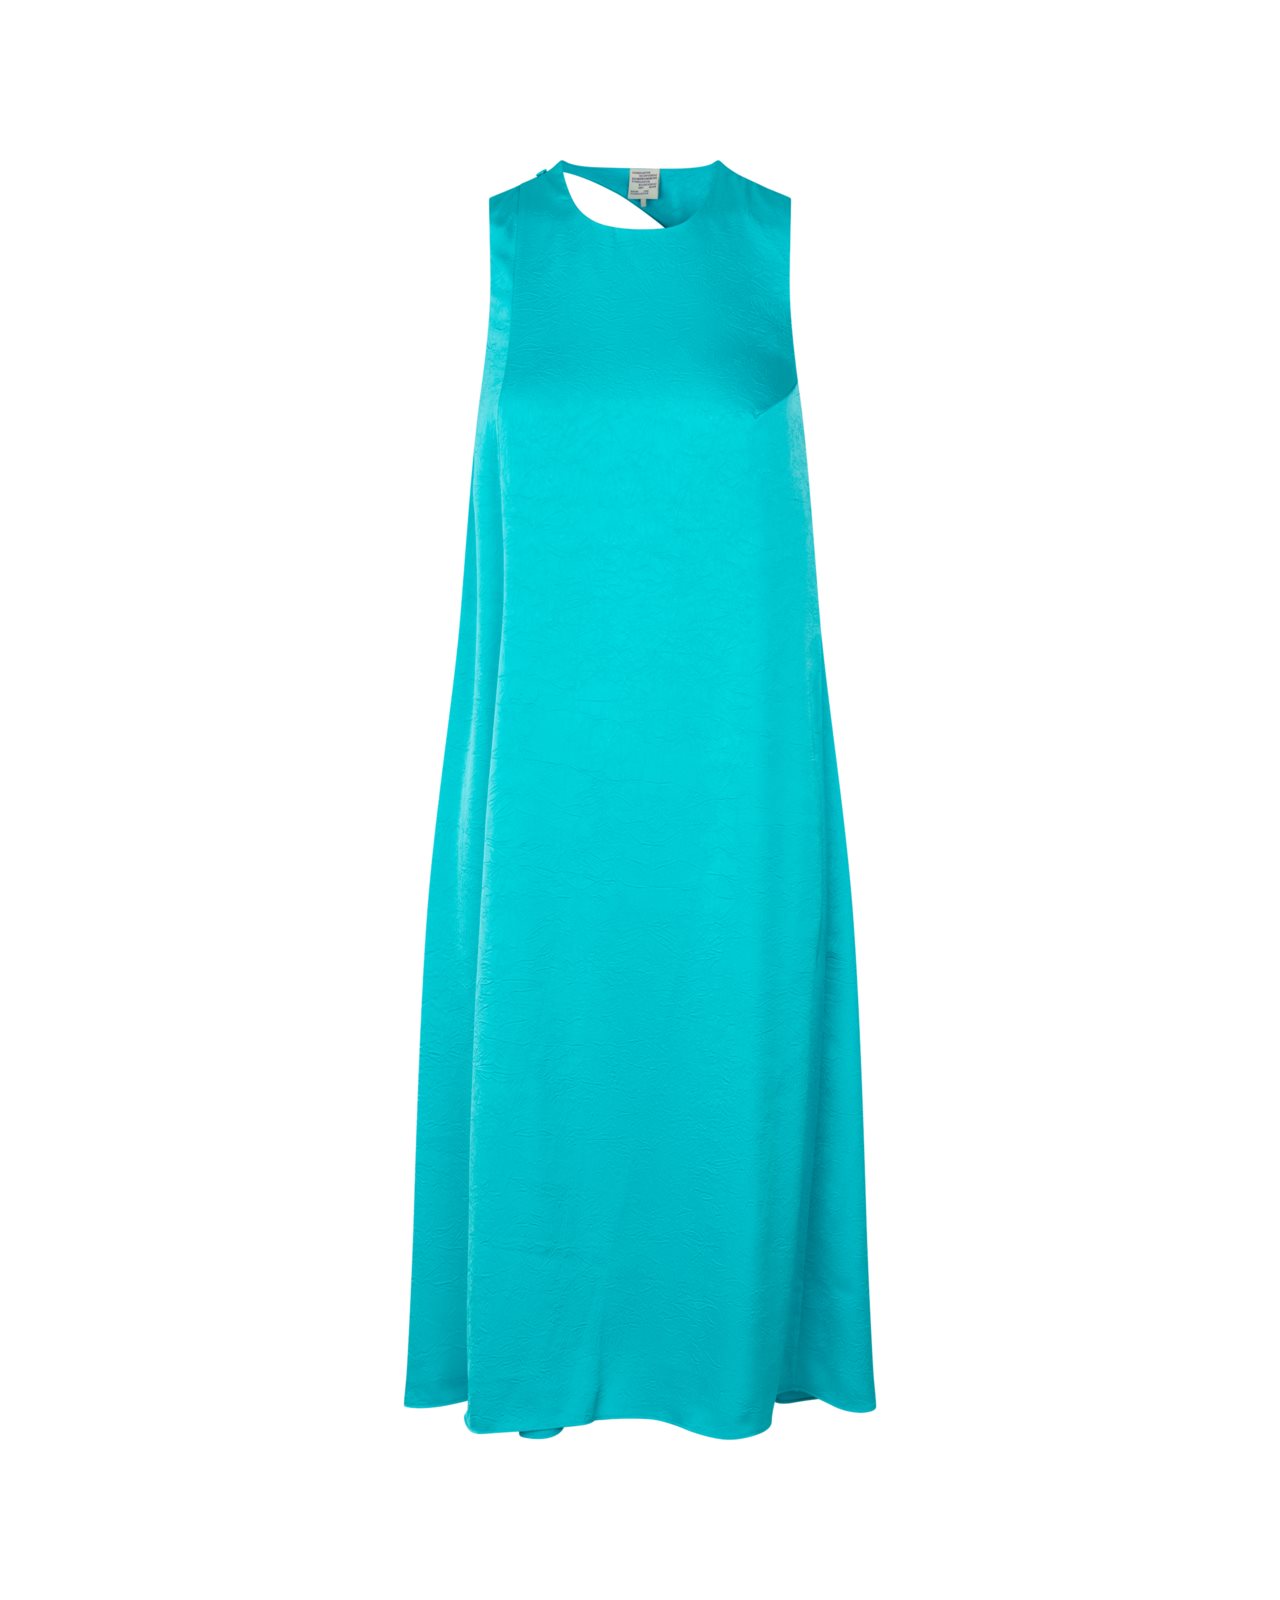 nk.se | Dress amami turquoise